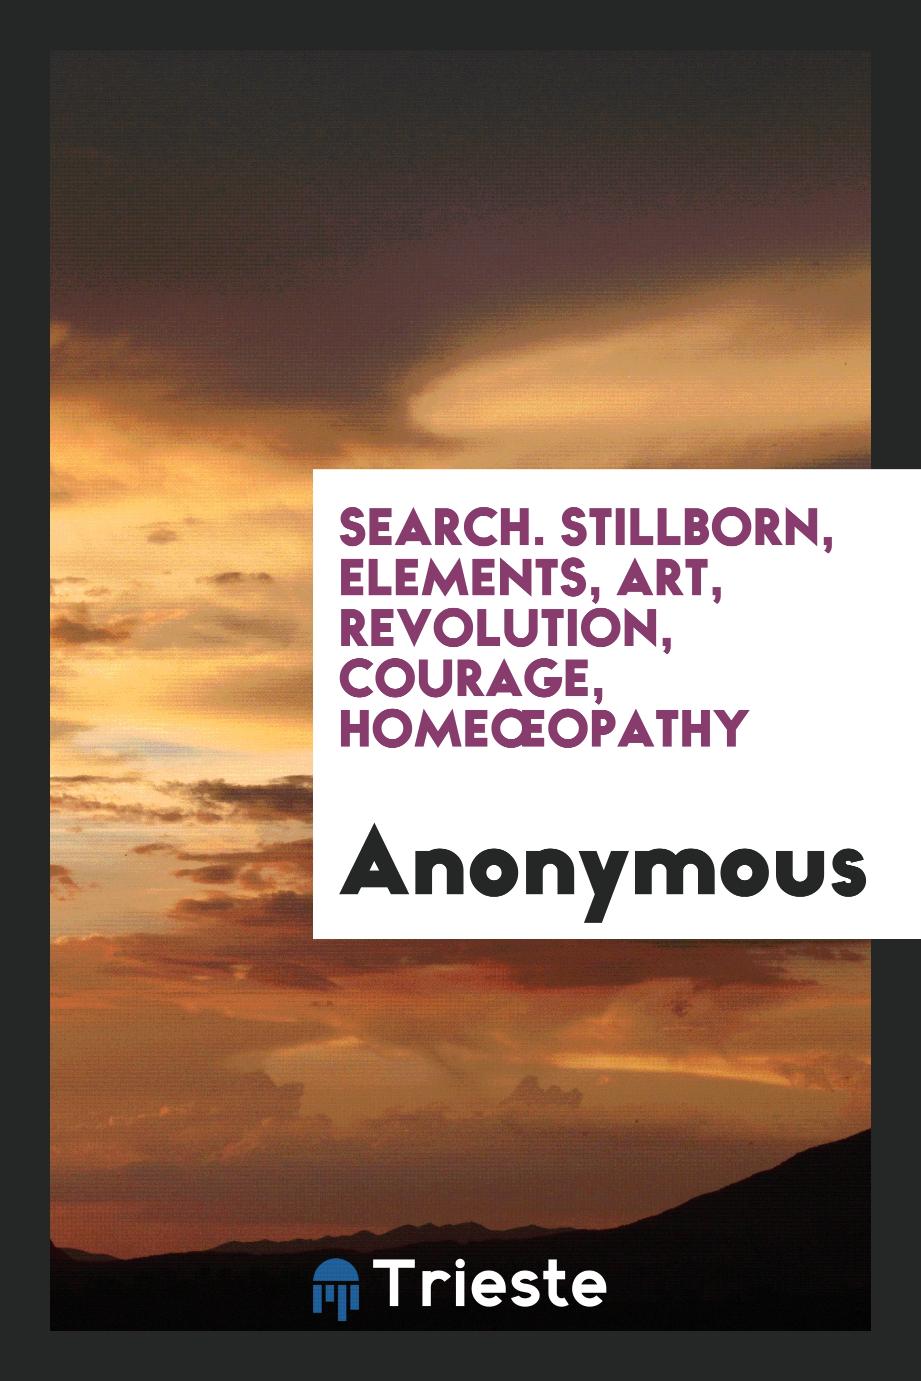 Search. Stillborn, elements, art, revolution, courage, homeœopathy